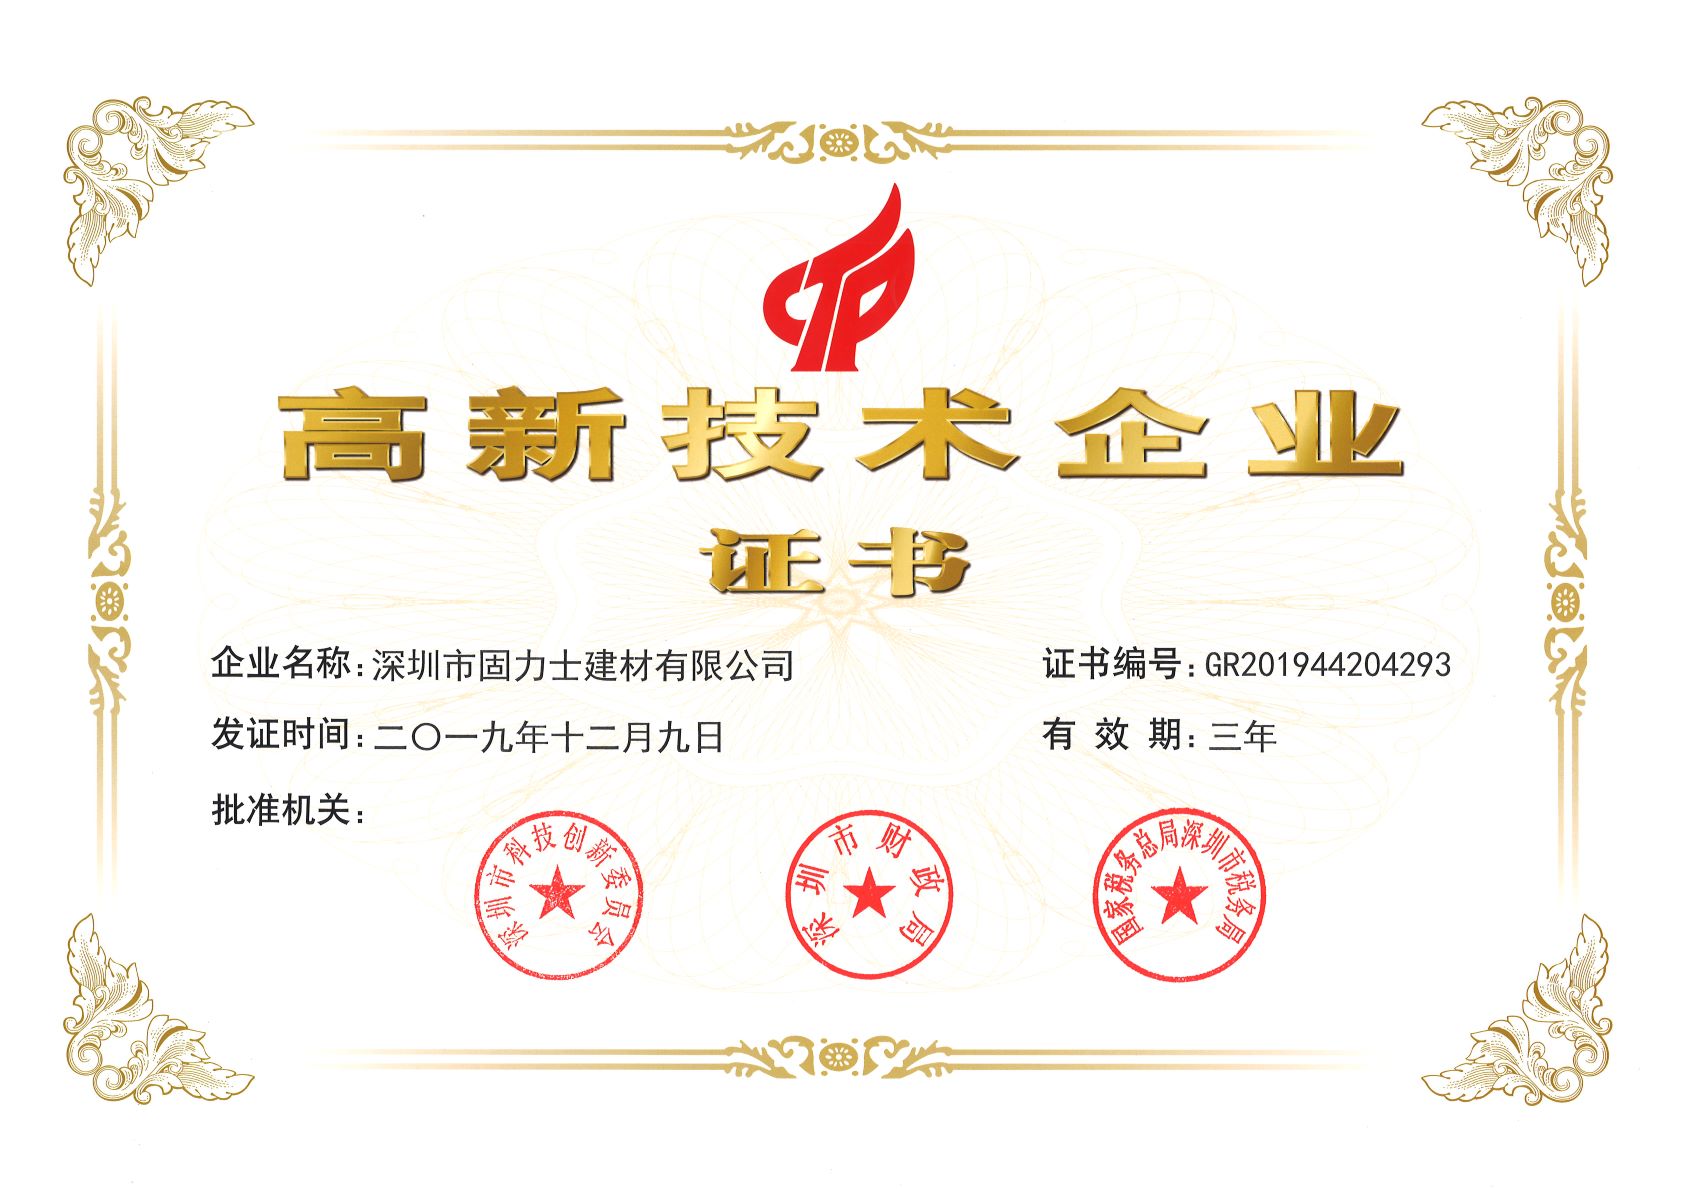 熱烈祝賀深圳市固力士建材有限公司通過國家高新技術企業認證